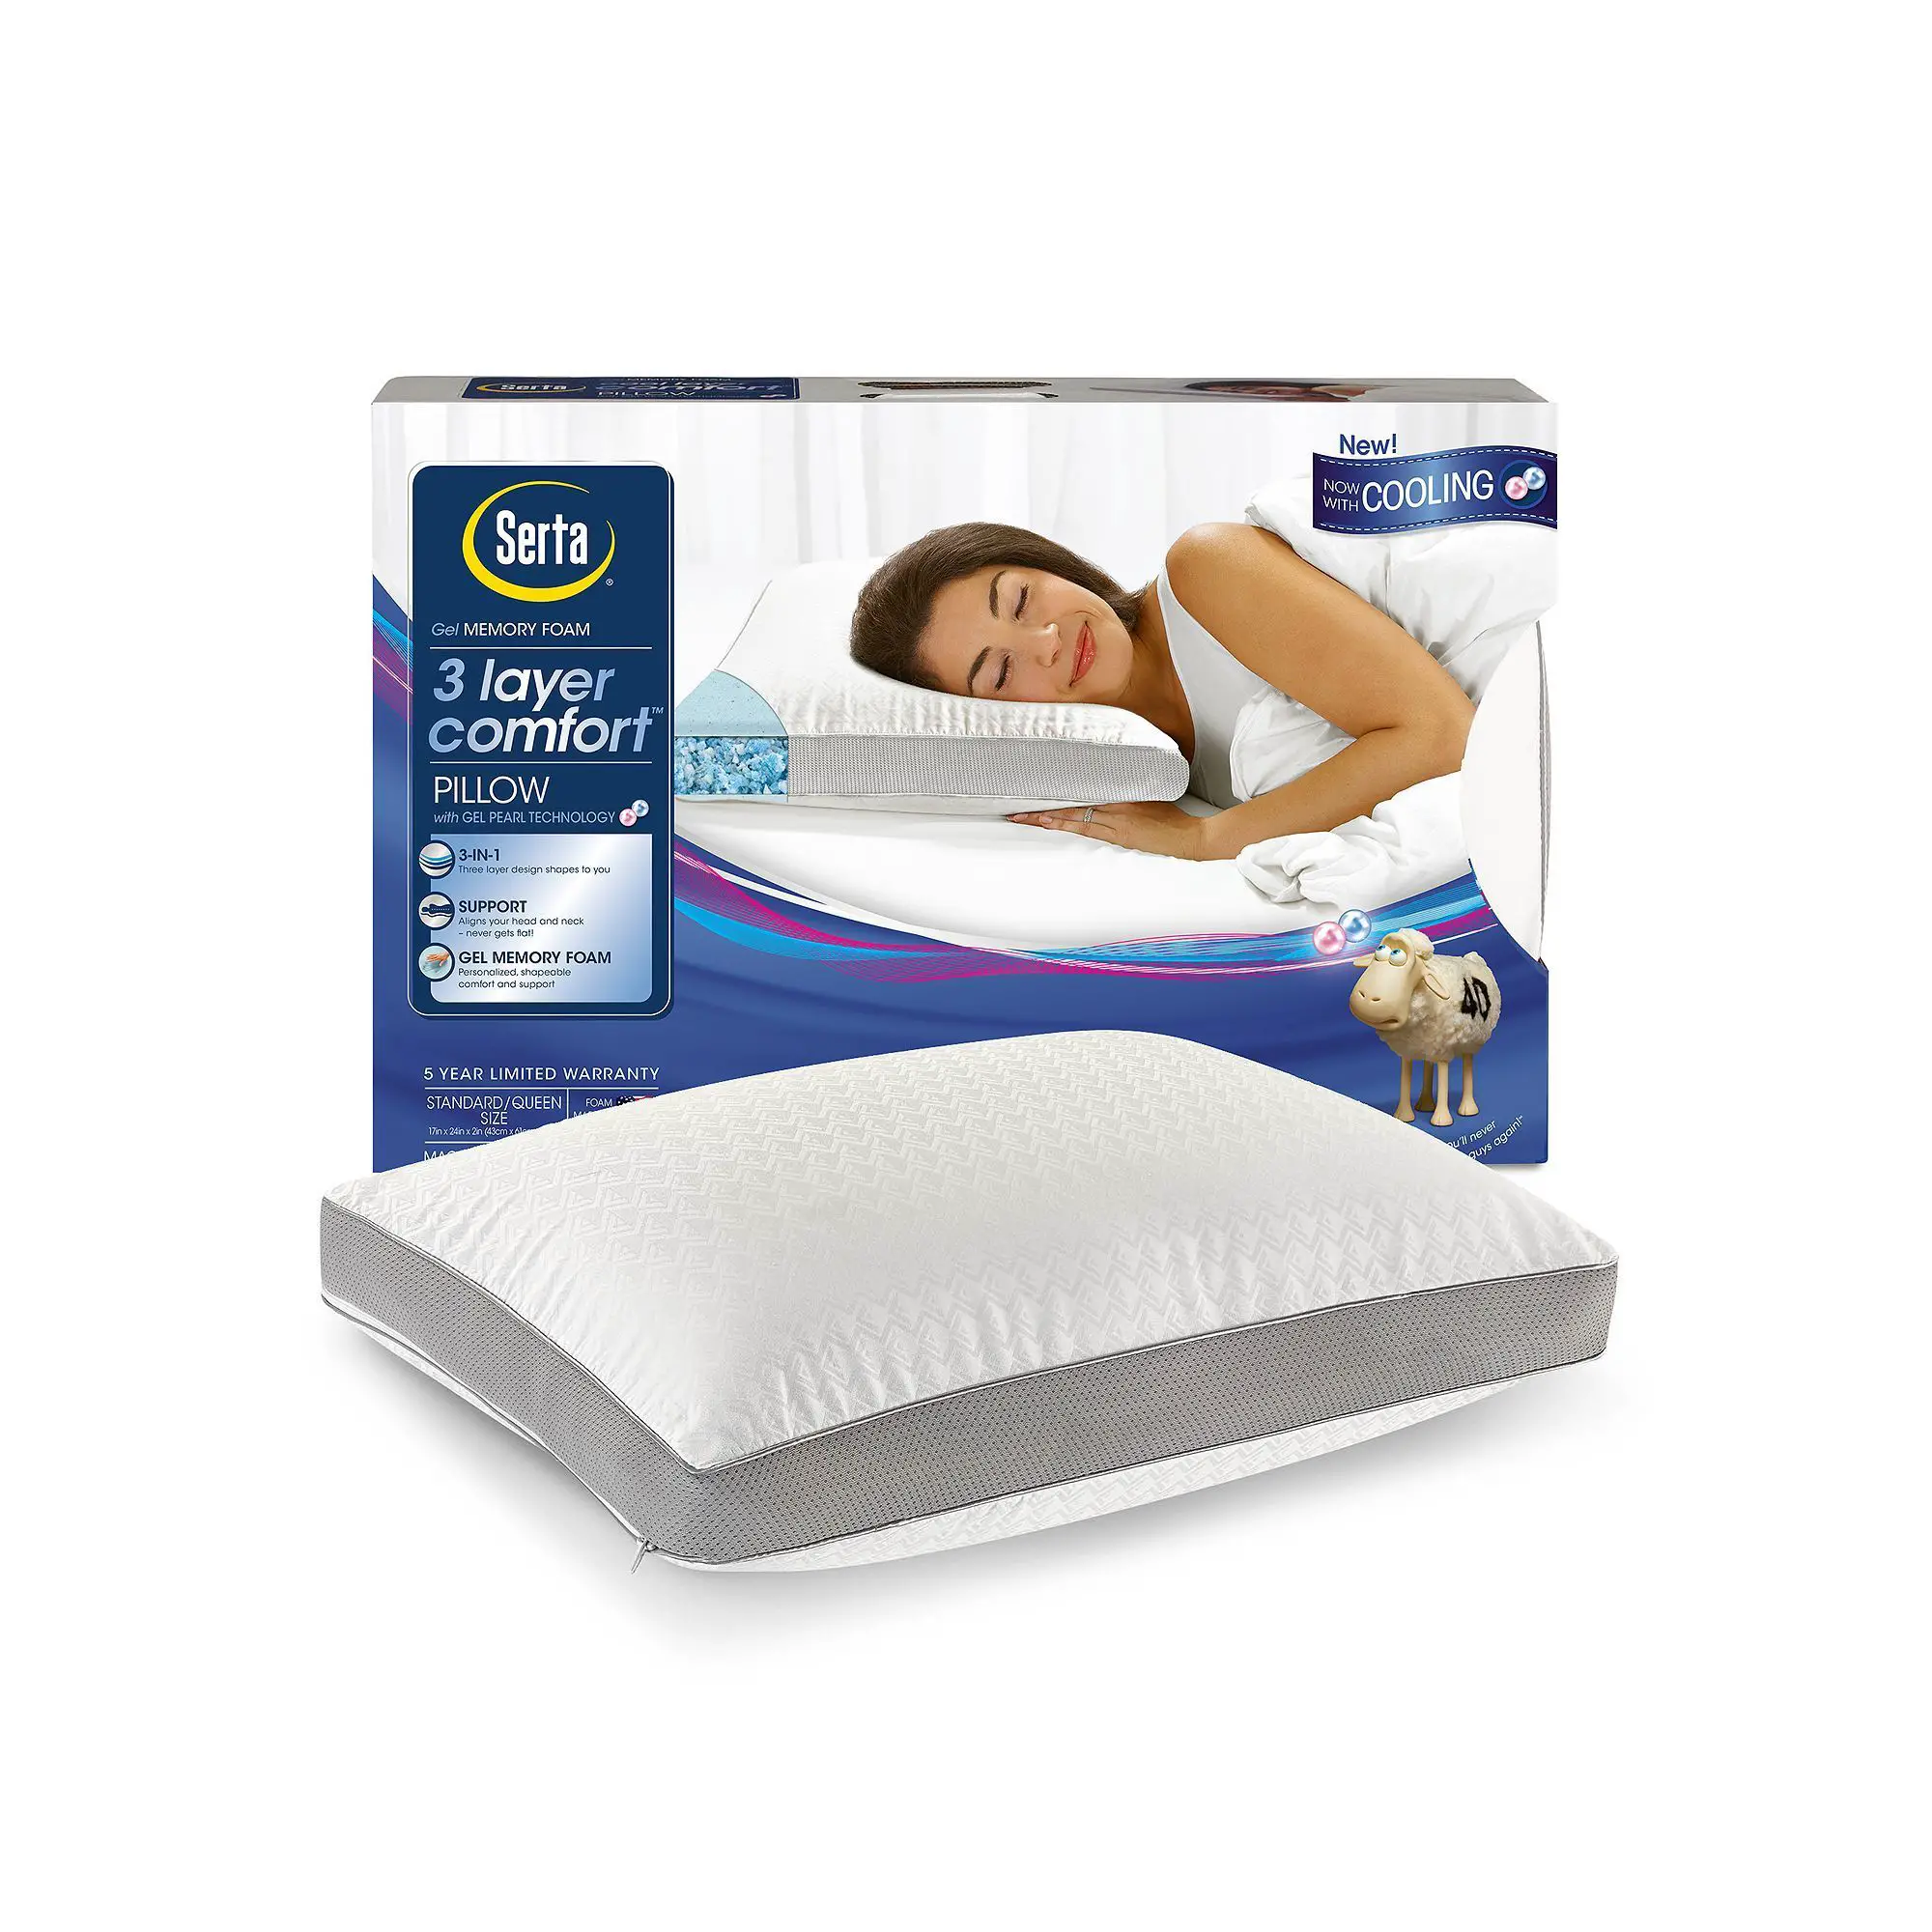 Serta Three Layer Comfort Pillow, White